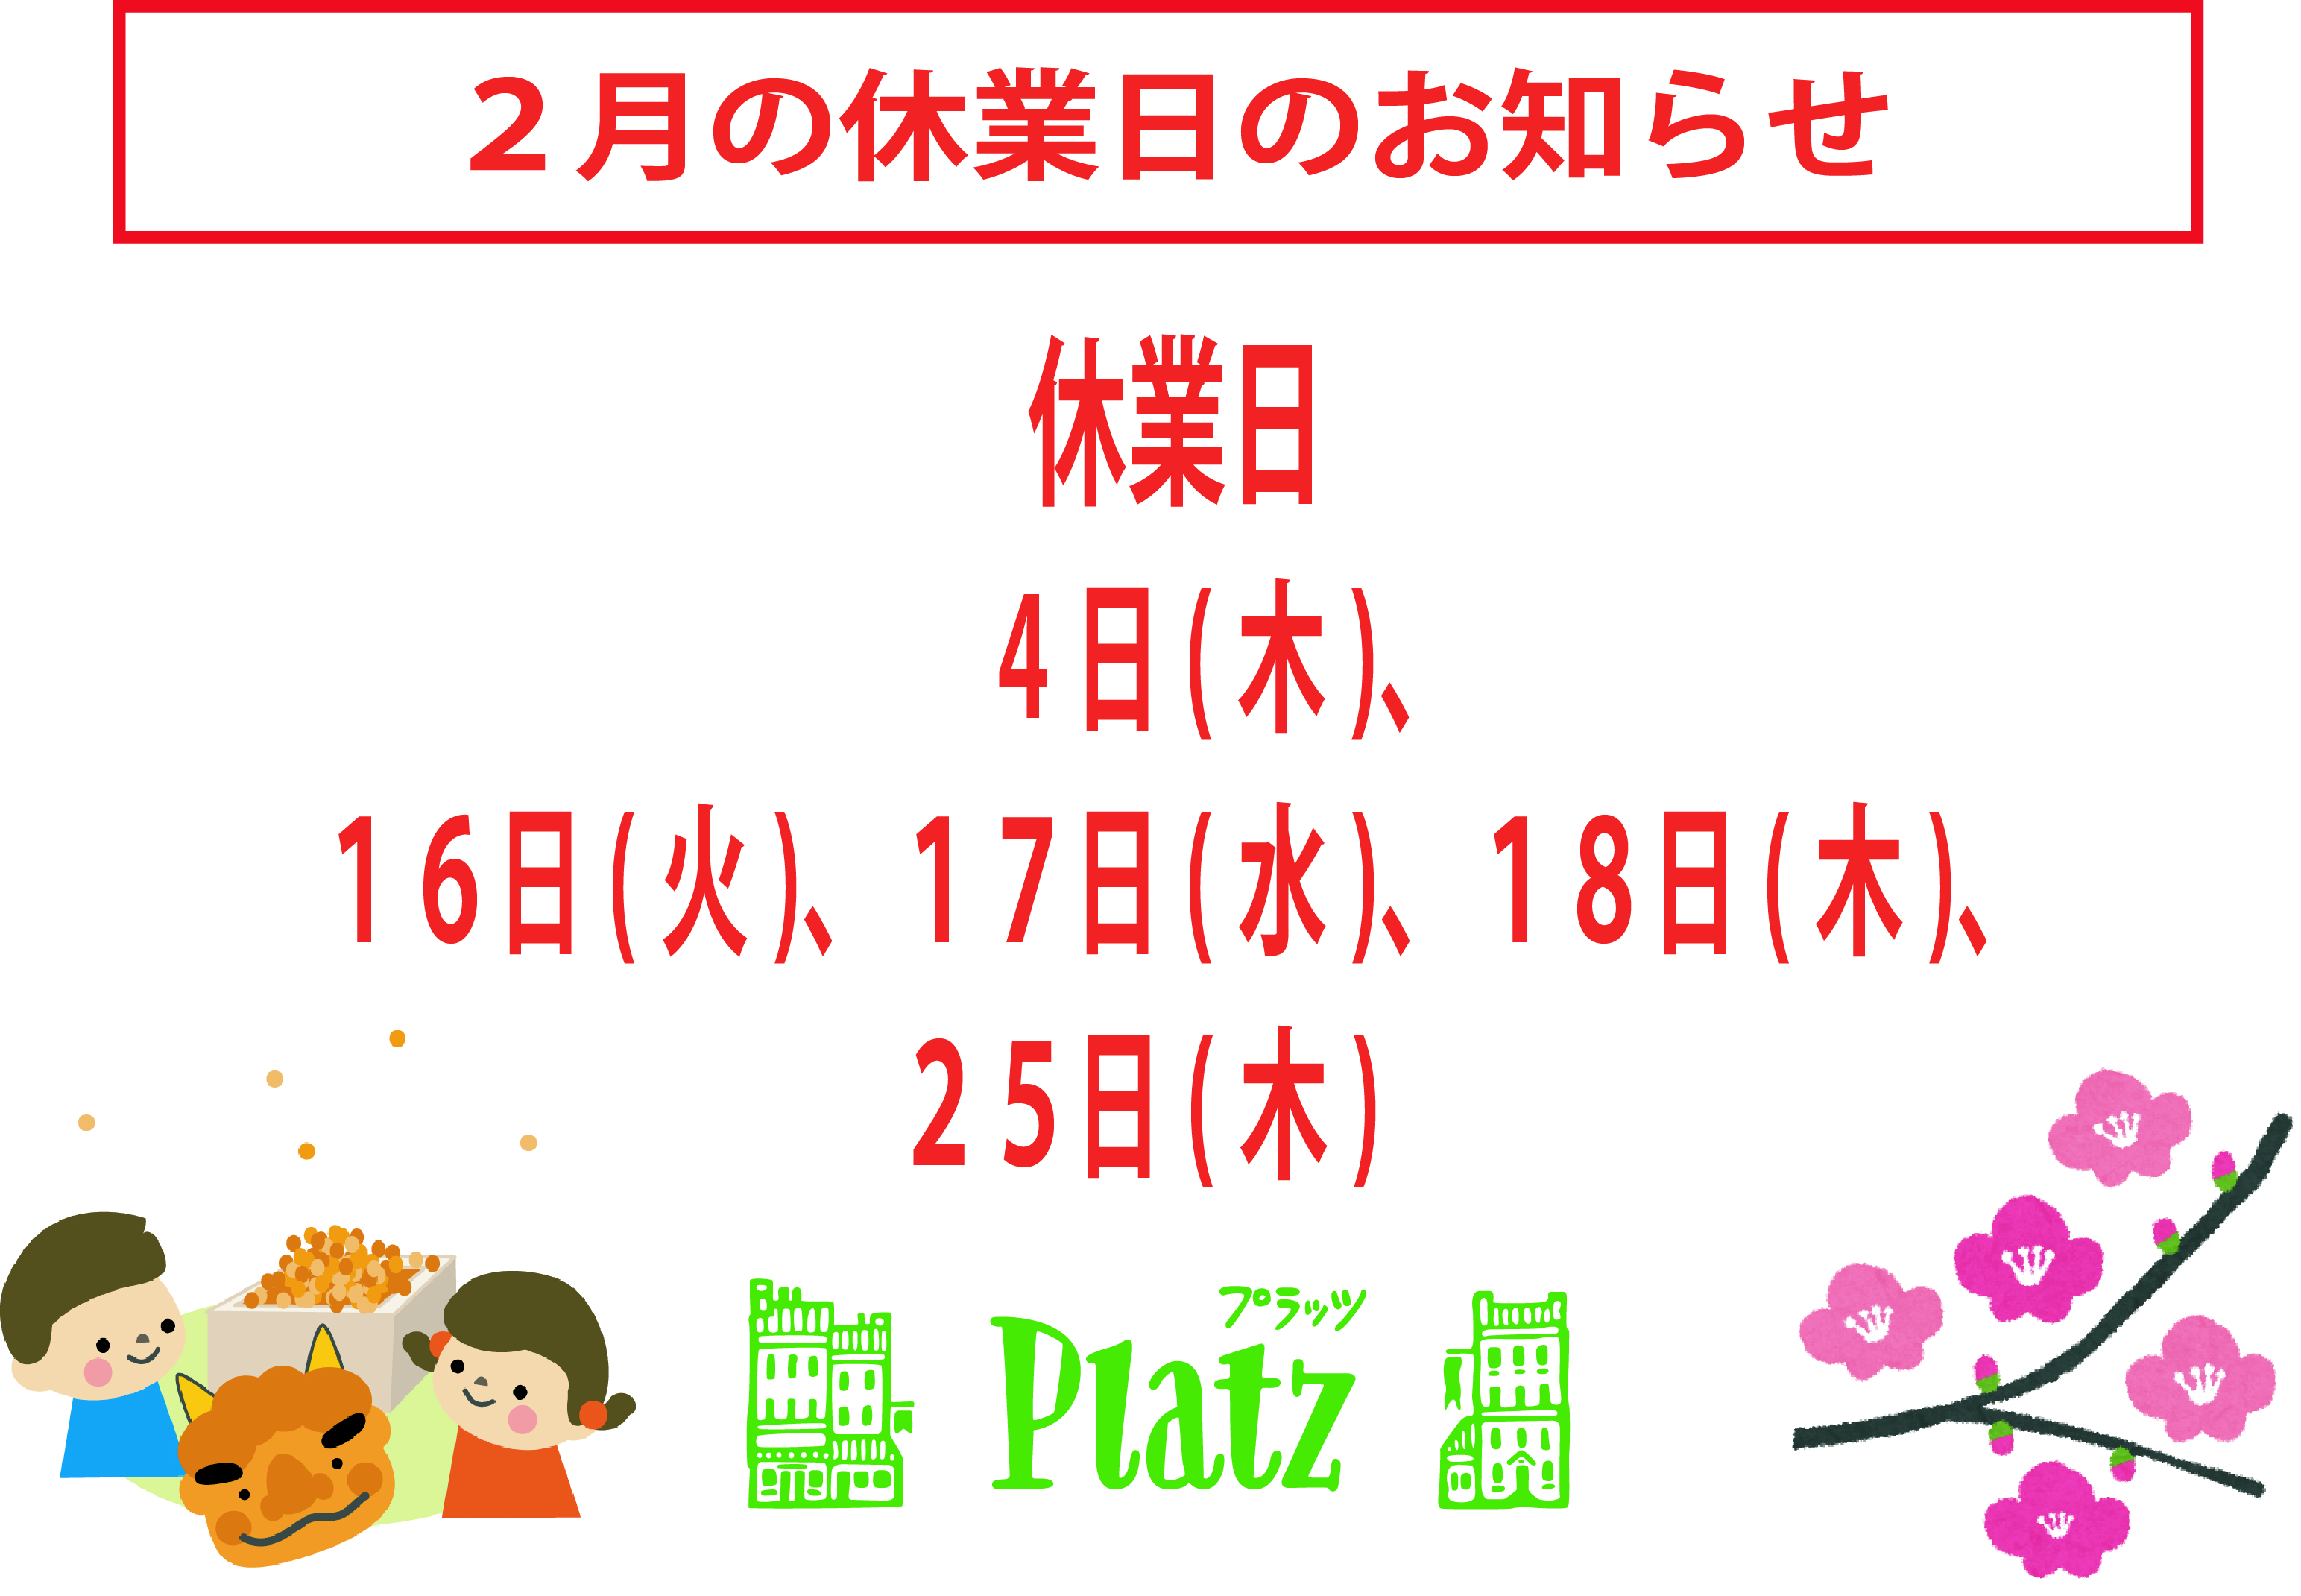 http://www.kyoto-platz.jp/news/images/2021.2%E6%9C%88%E4%BC%91%E6%A5%AD%E6%97%A5.jpg